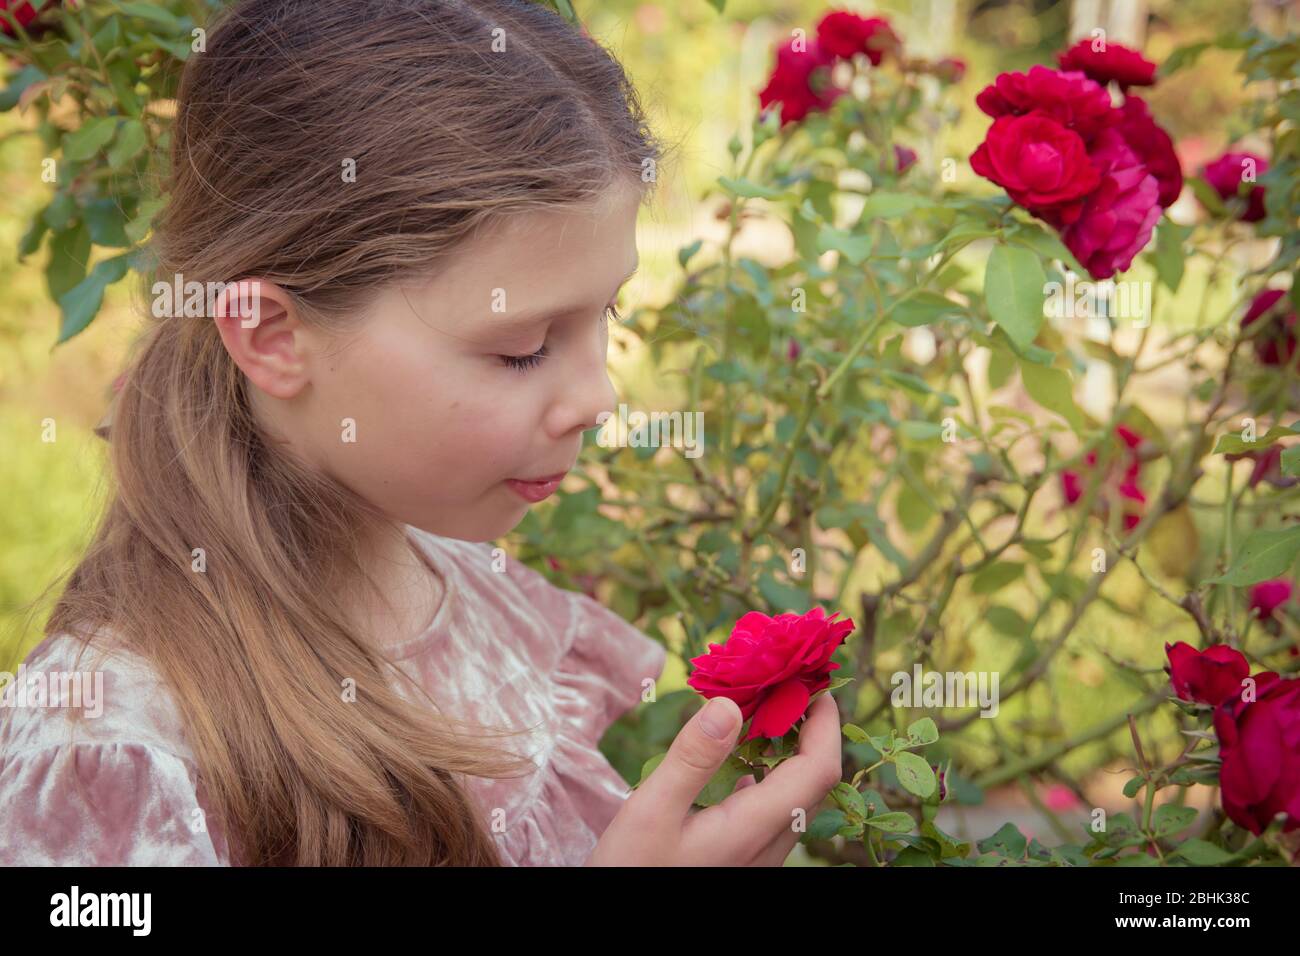 Una dolce ragazza con capelli marroni odora le rose in giardino Foto Stock